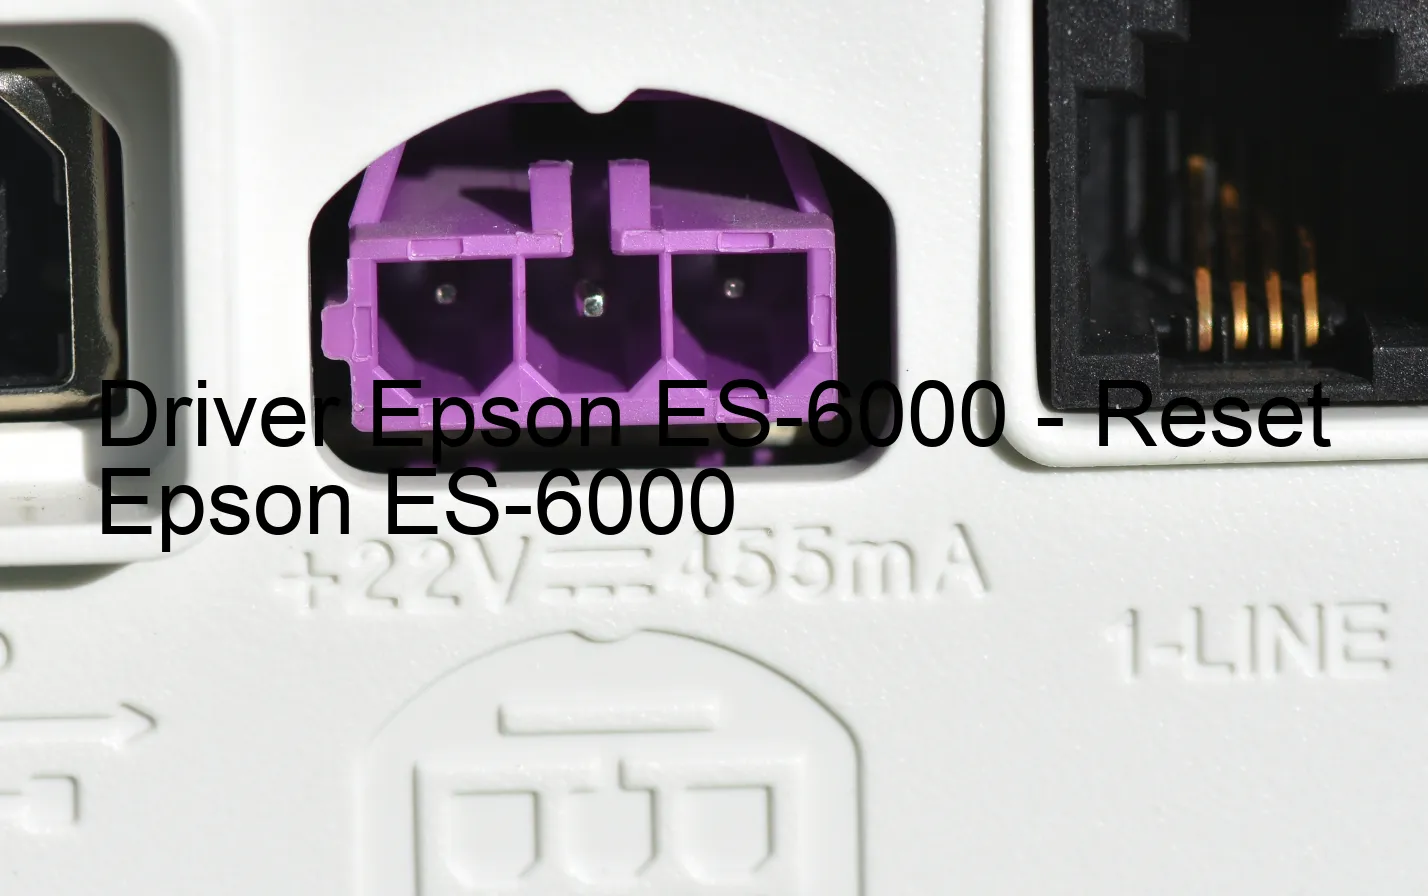 Epson ES-6000のドライバー、Epson ES-6000のリセットソフトウェア